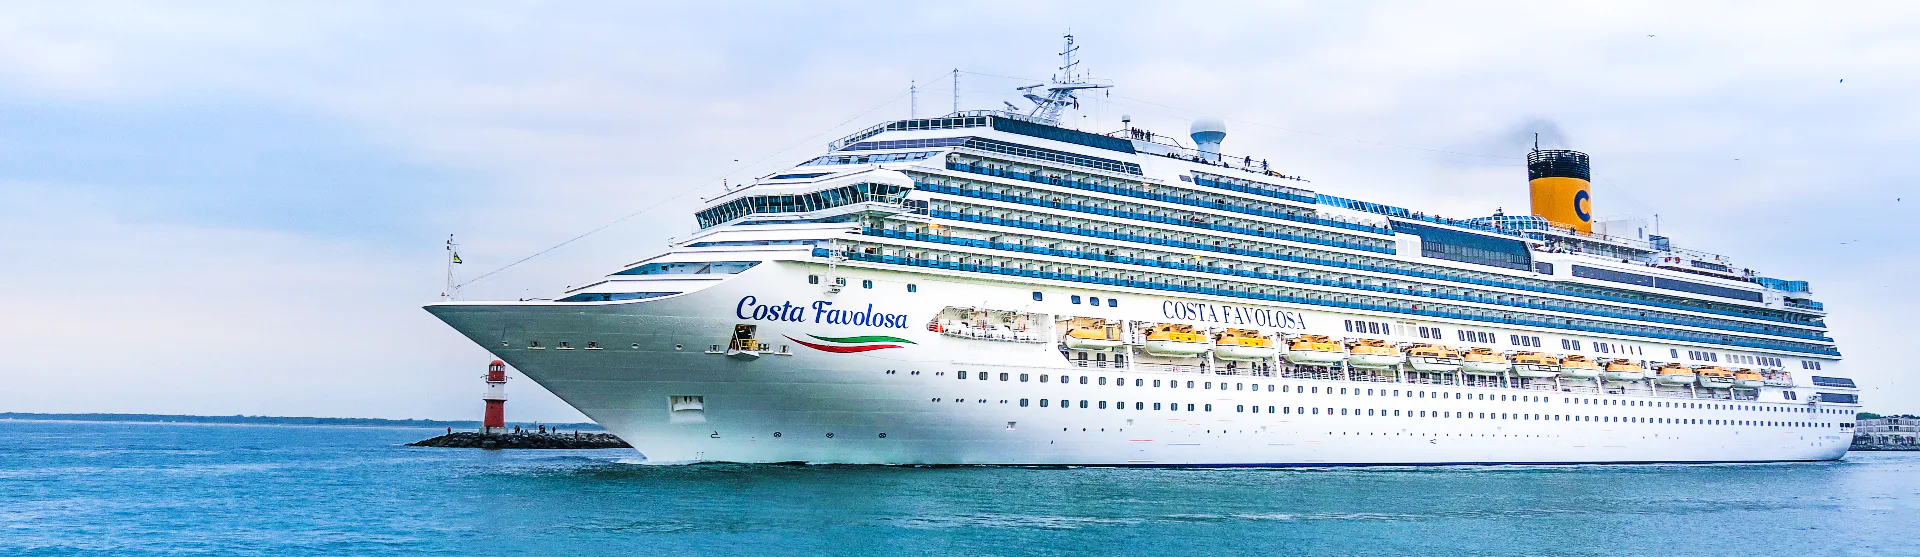 Costa Cruises - Costa Favolosa